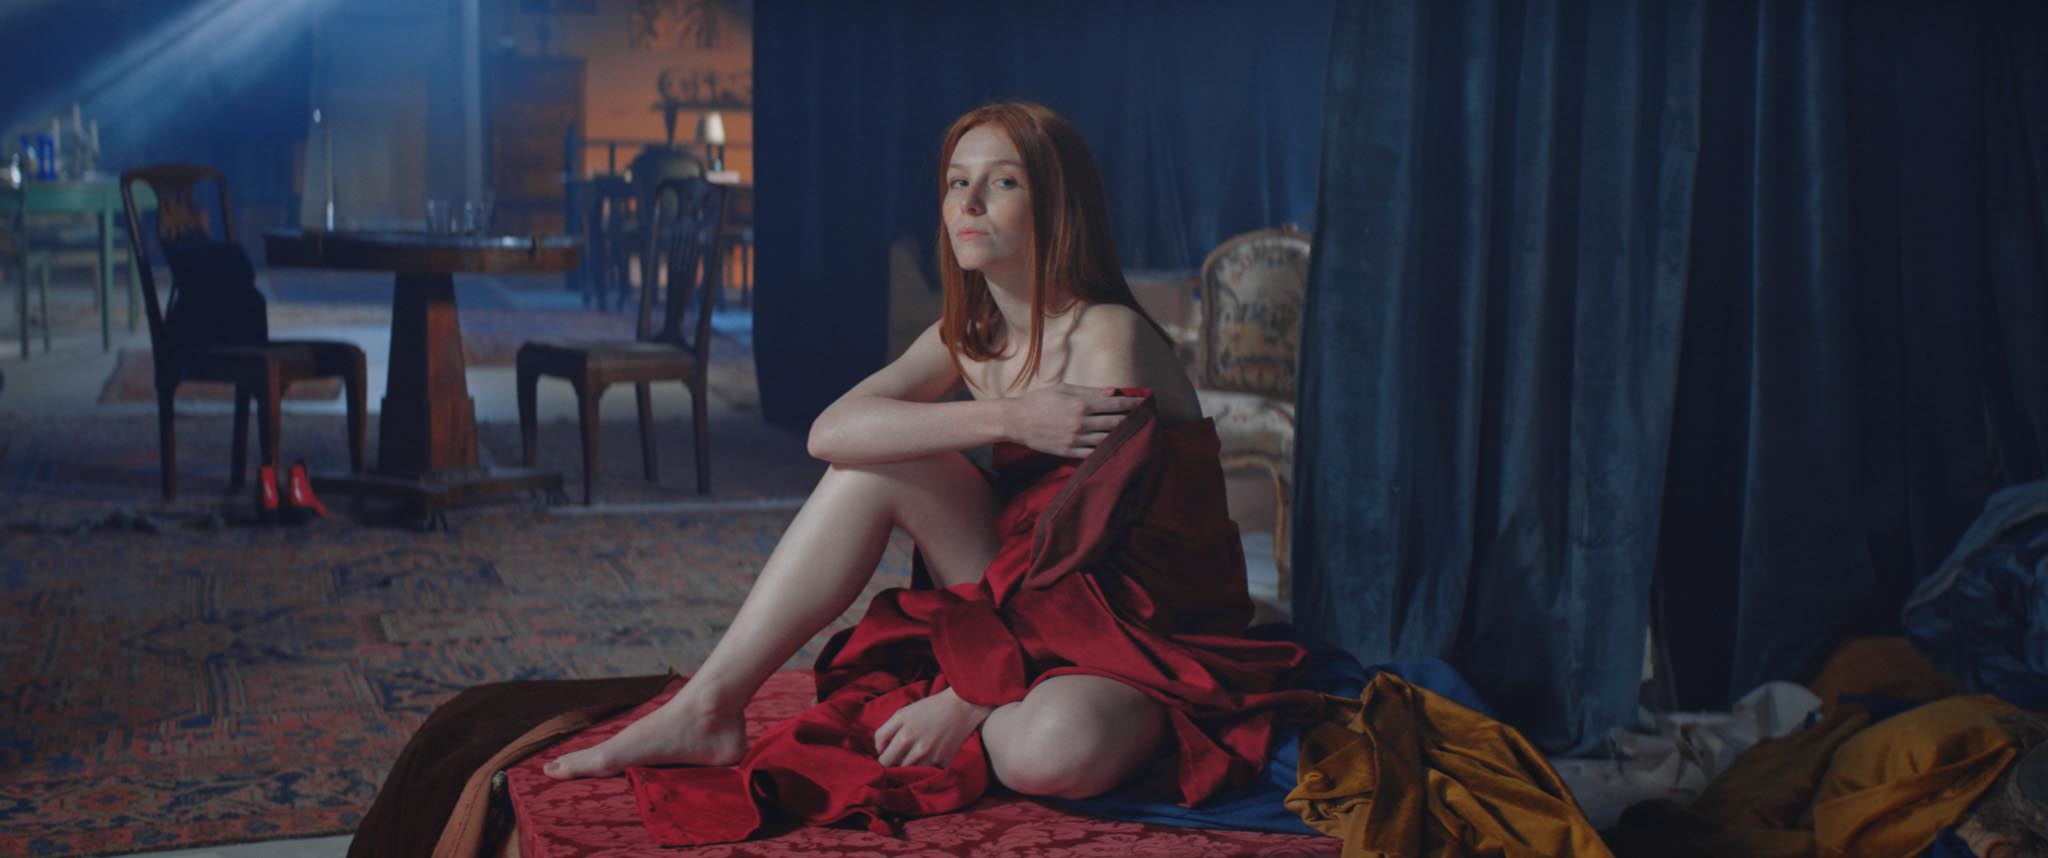 Samantha Müller é destaque no longa ‘Vermelho Monet’, que está em cartaz nos cinemas